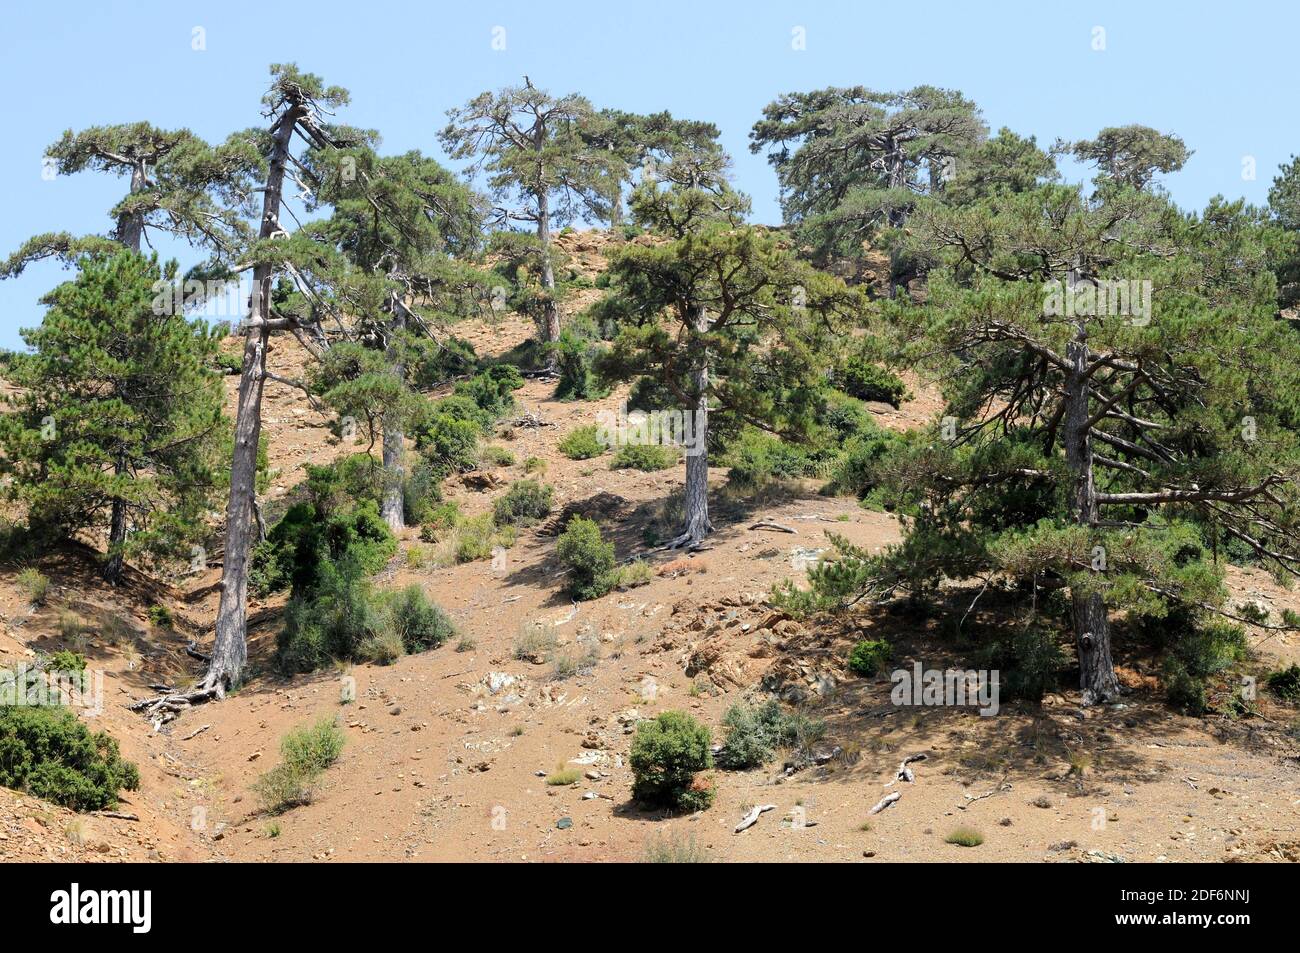 El pino negro turco (Pinus nigra caramanica) es un árbol de coníferas nativo de Turquía. Esta foto fue tomada en las Montañas Tauro, Turquía. Foto de stock